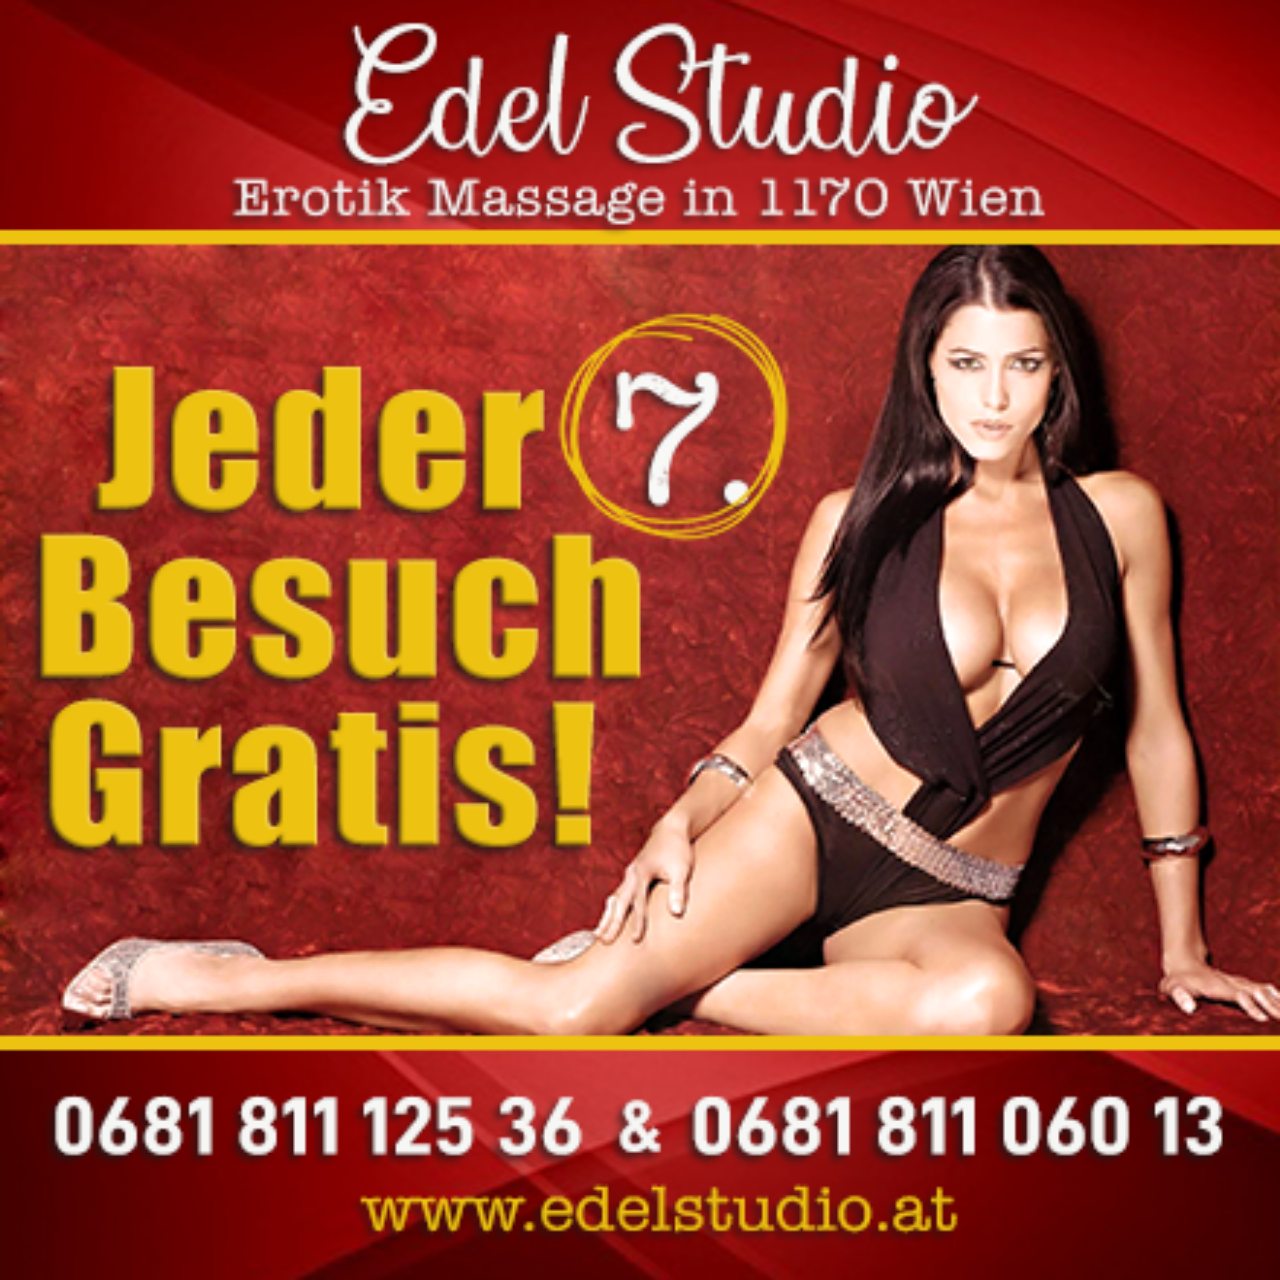 EDEL-STUDIO Massage vom Feinsten!, Blumengasse 5A in Wien